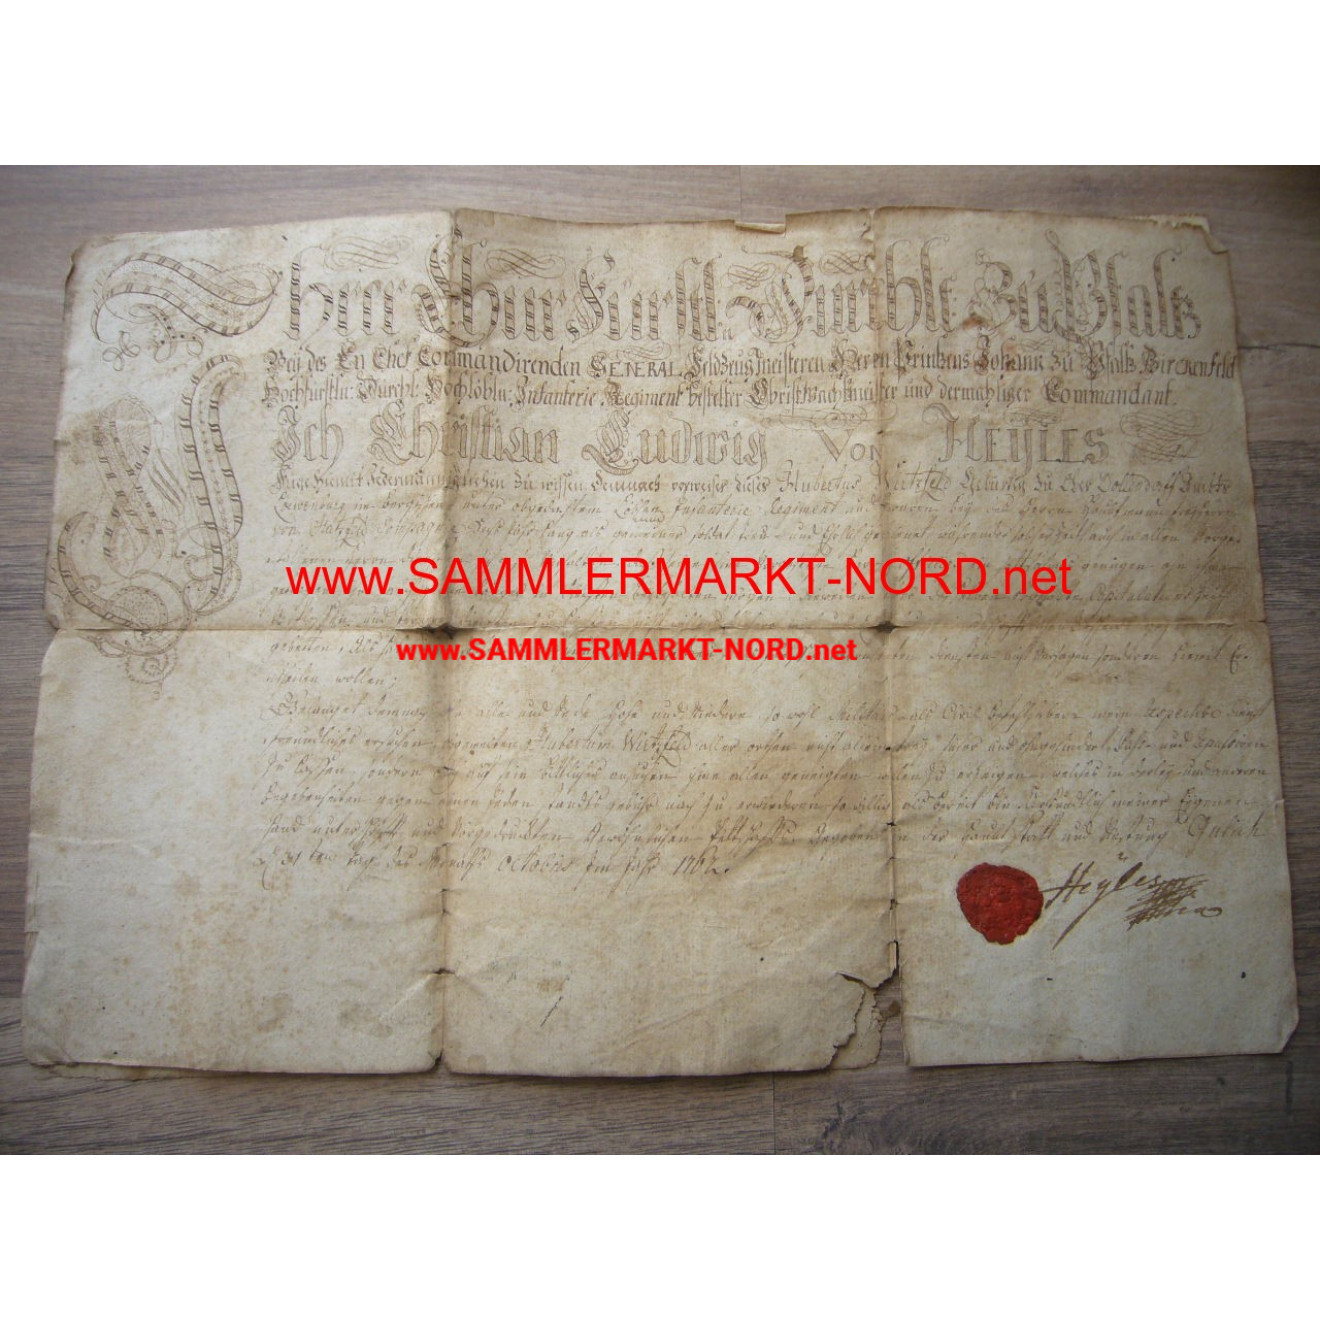 CHRISTIAN LUDWIG VON HEYLES - Autograph - Urkunde 1767